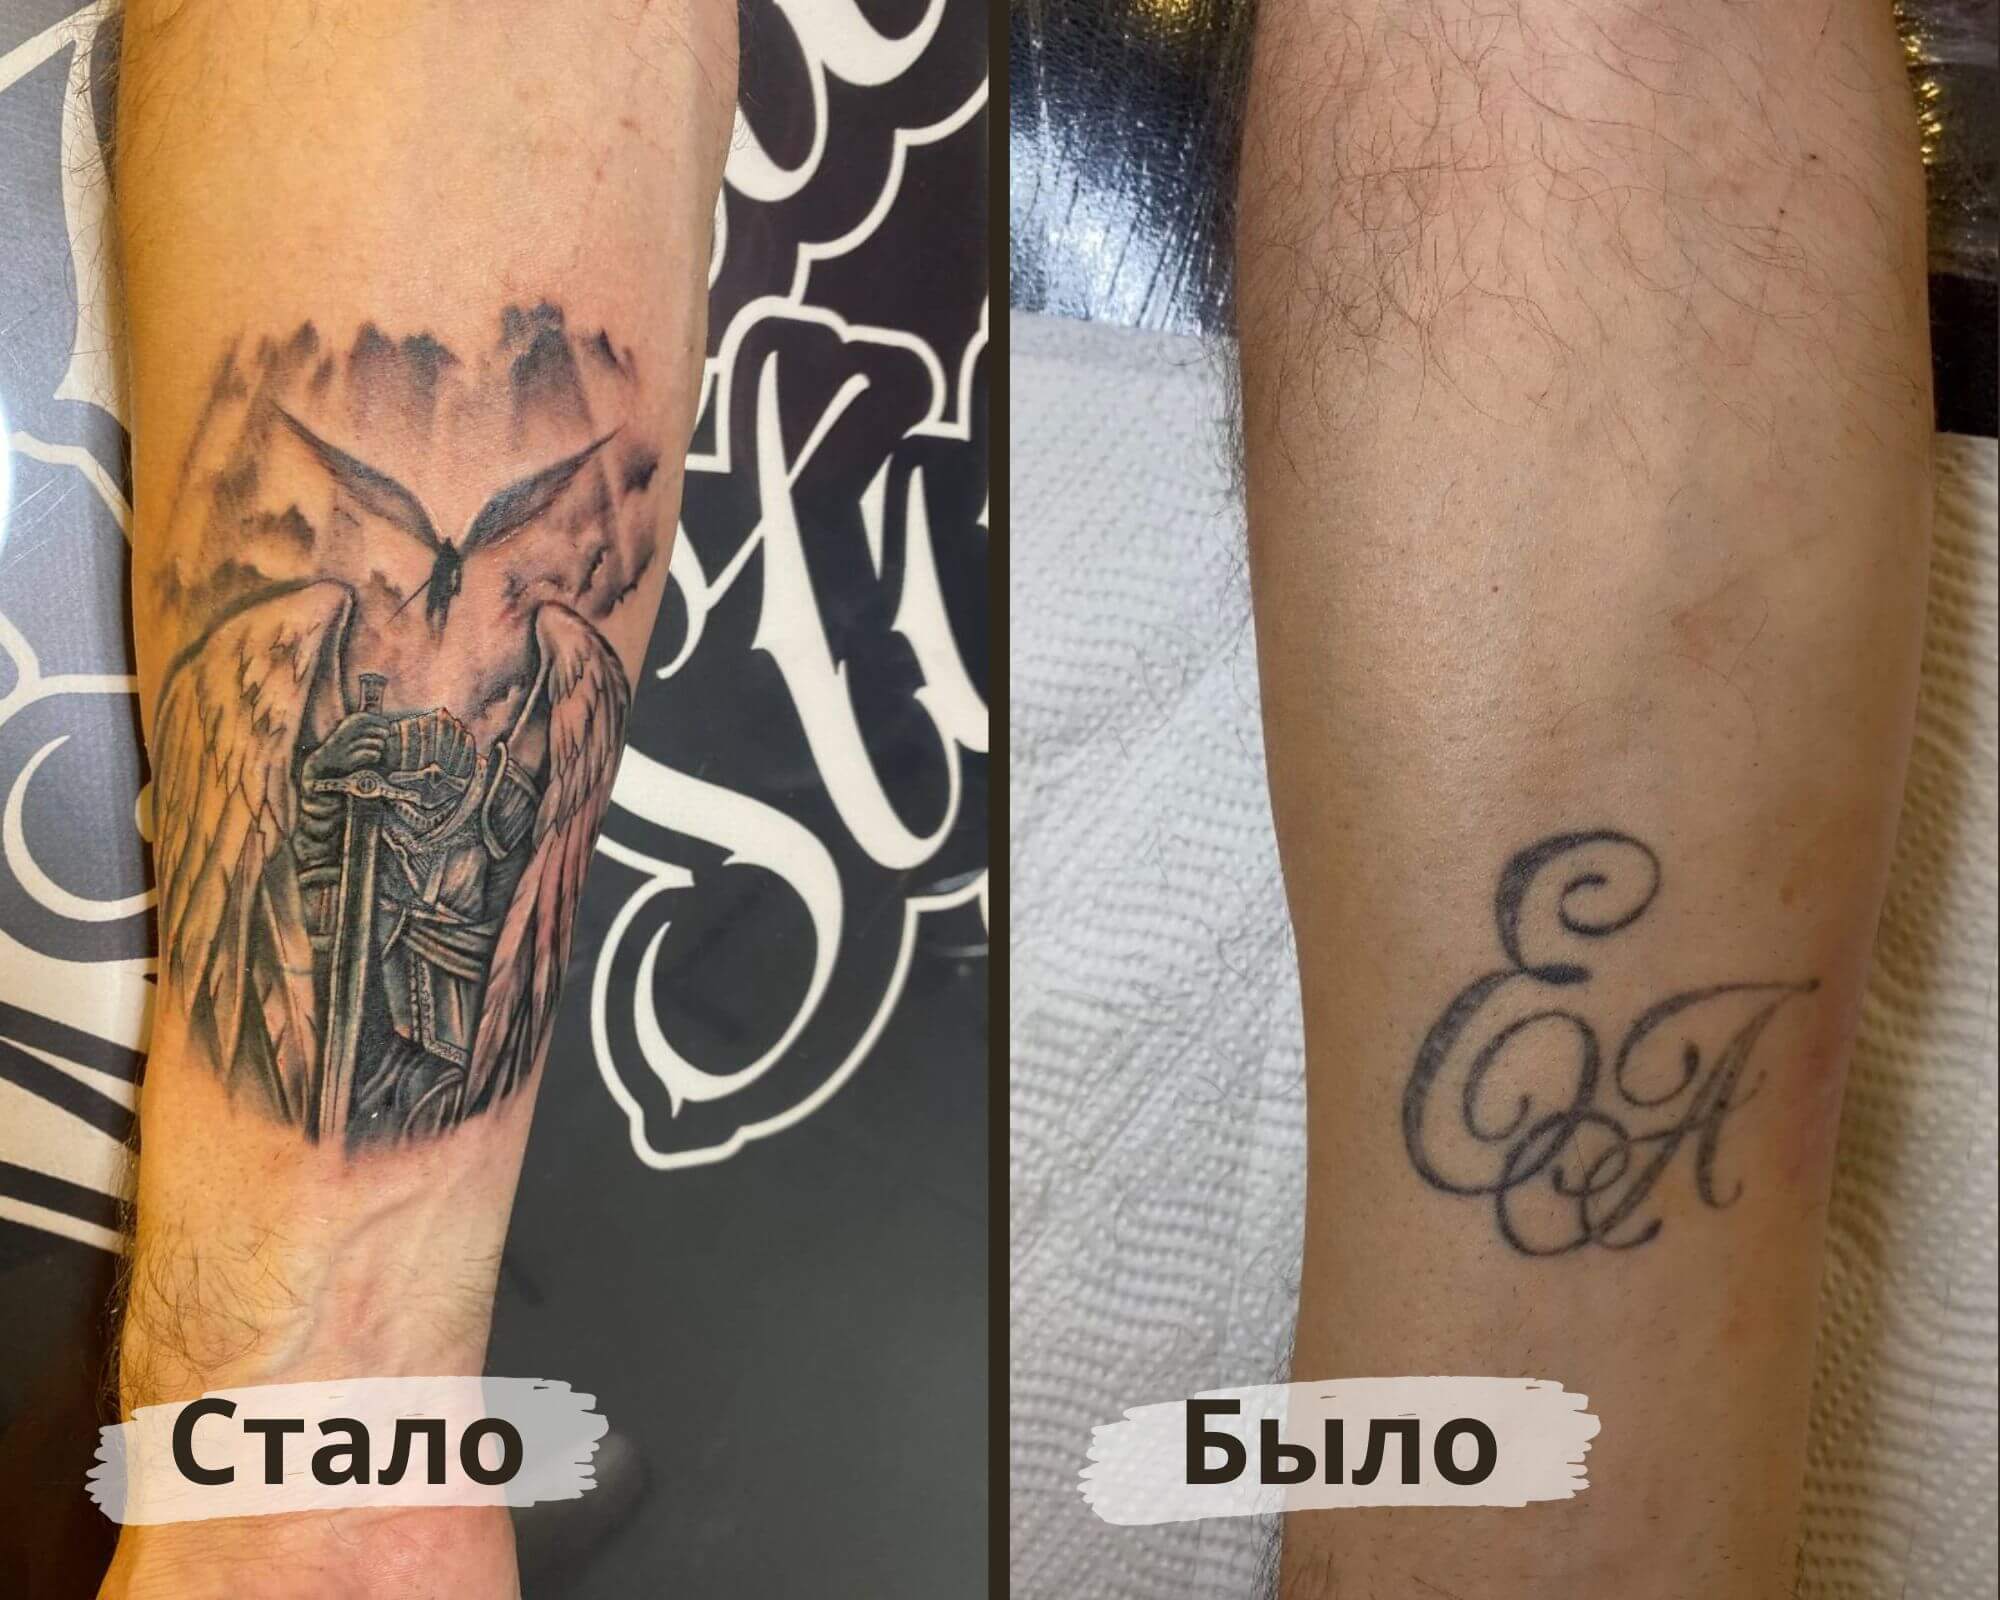 Пример перекрытия старой татуировки